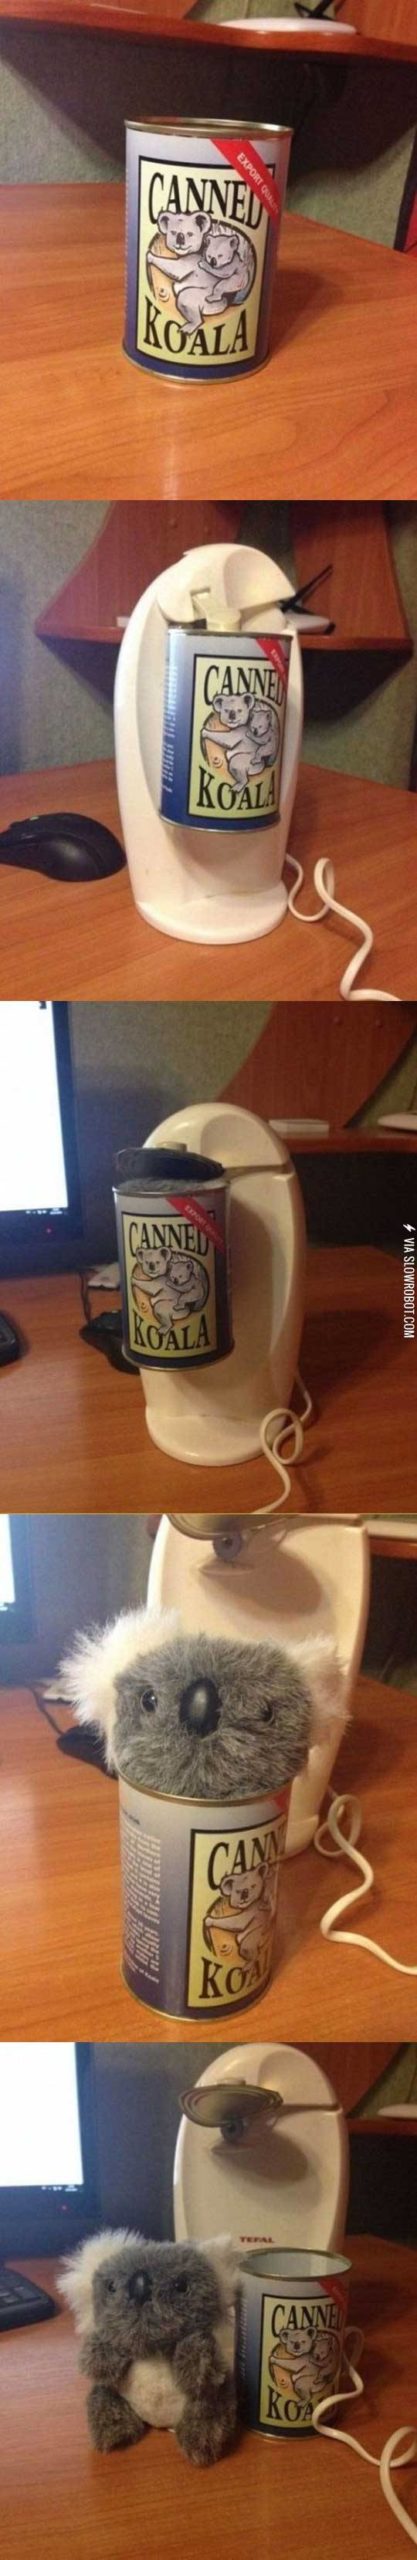 Canned+koala